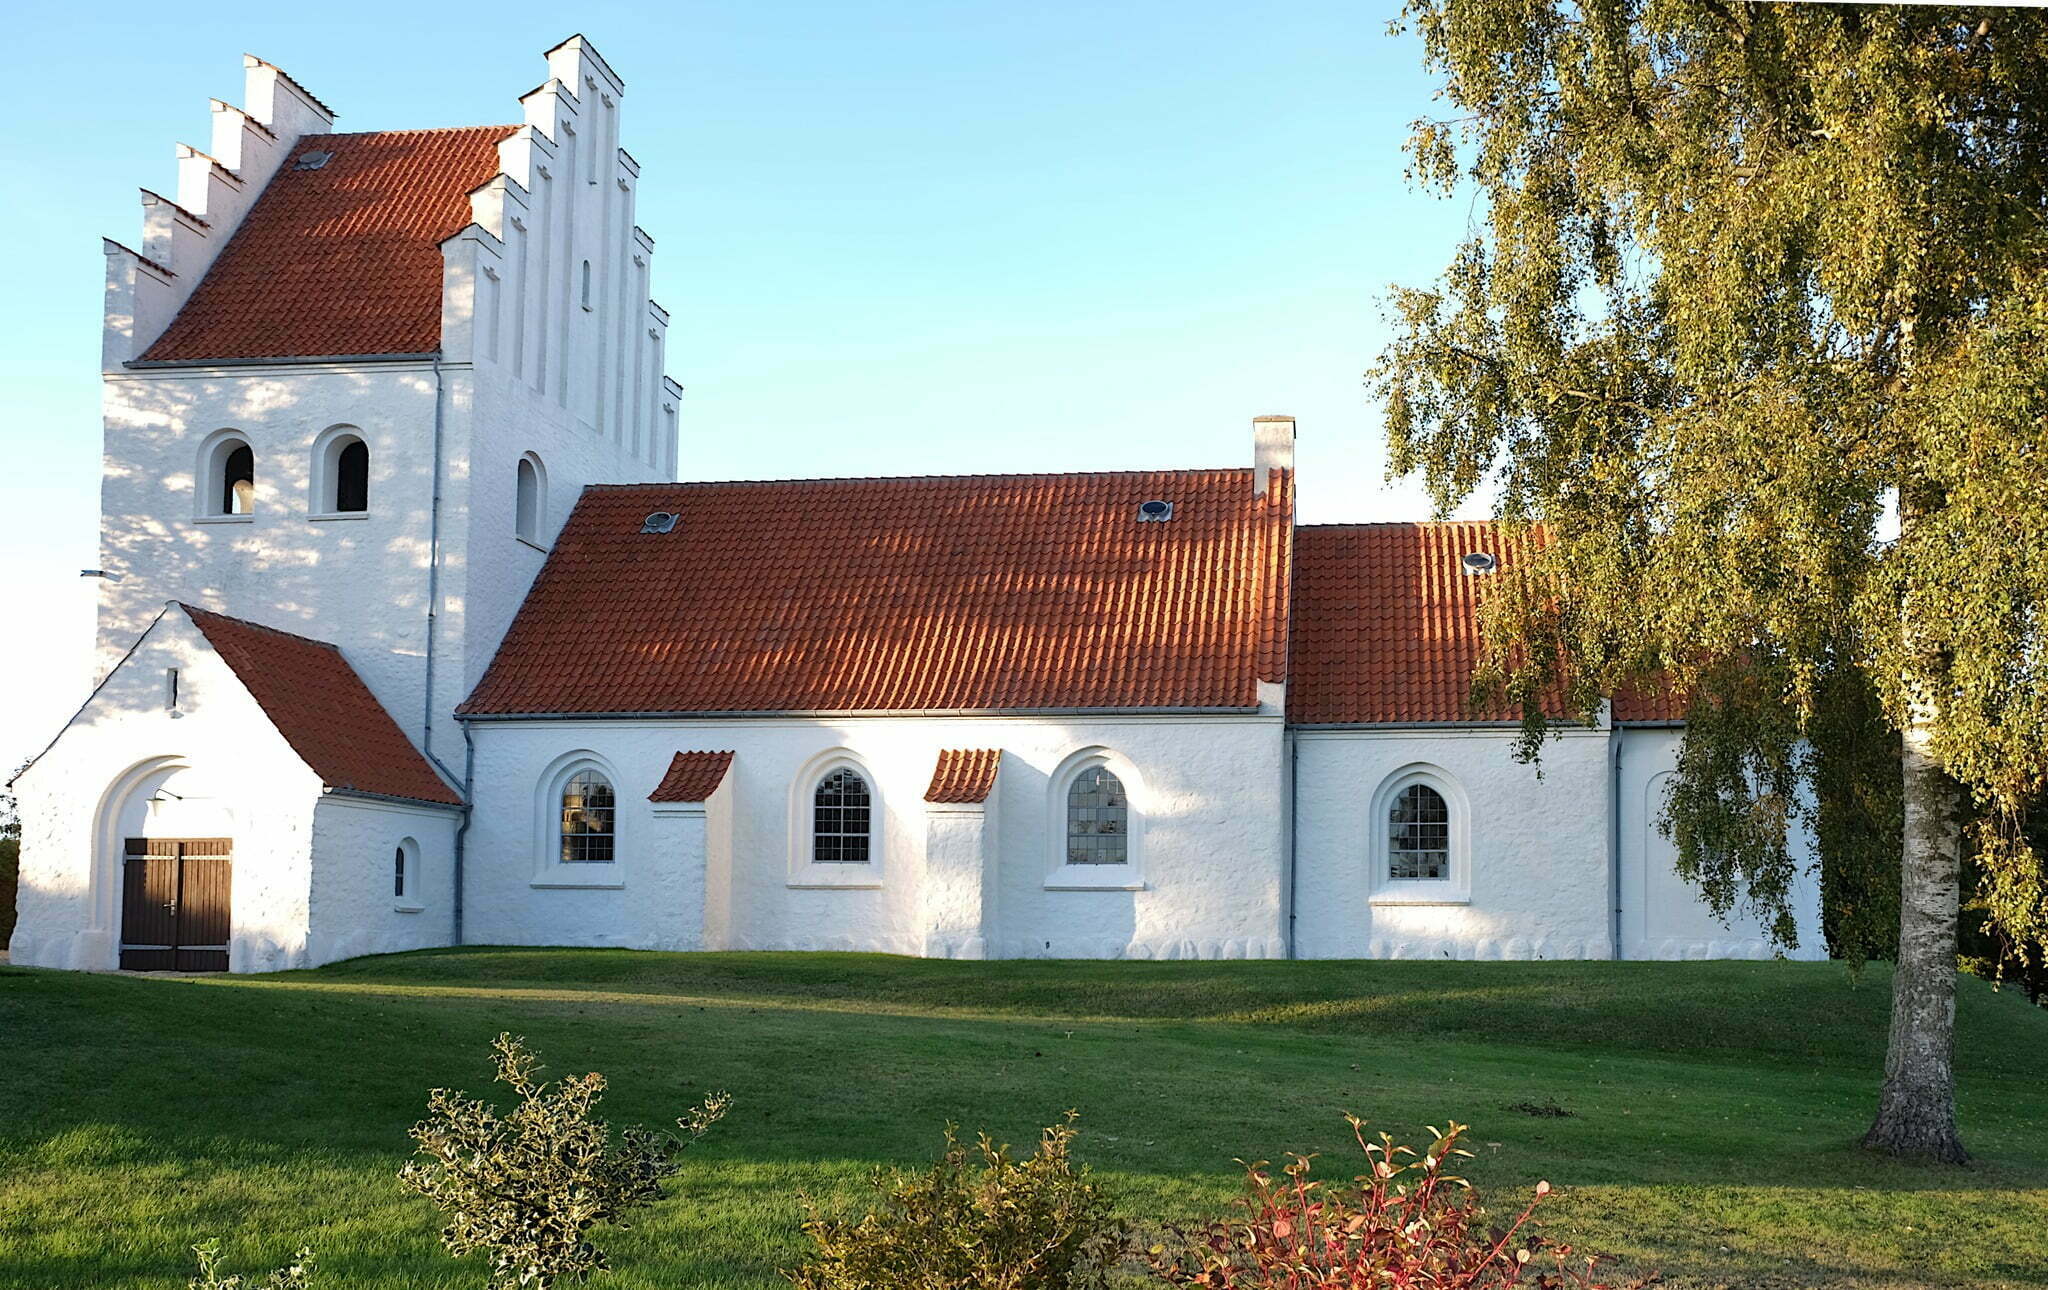 Stenvad kirke foto Keld Pihlkjer